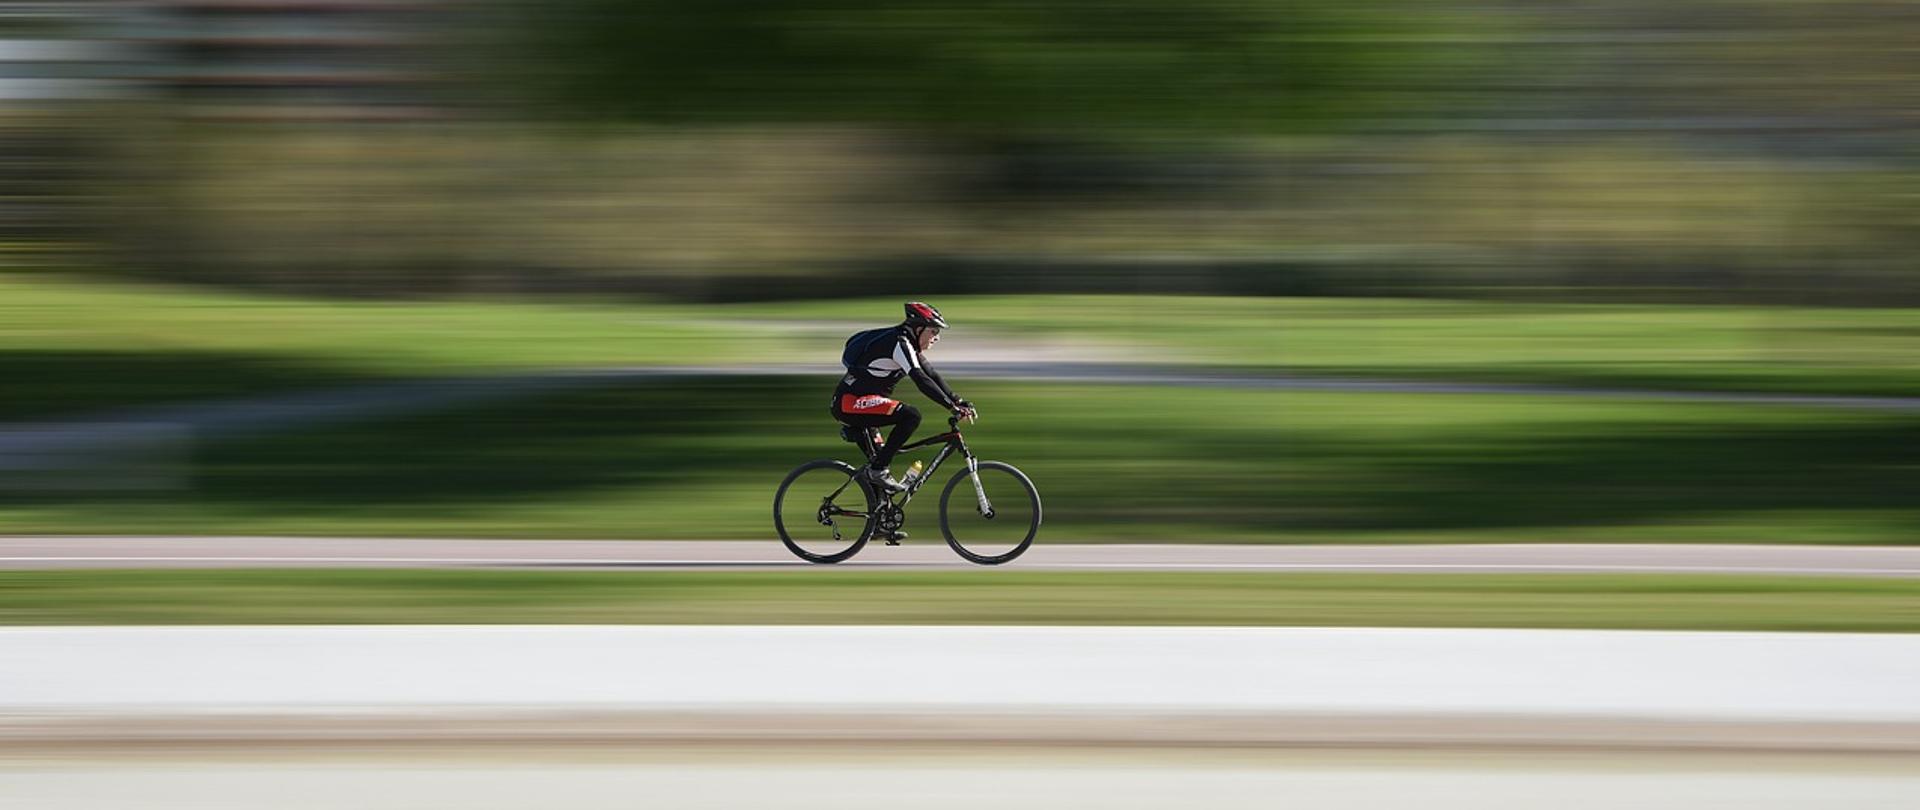 Zdjęcie przedstawia jedną osobę jadącą na rowerze na zewnątrz